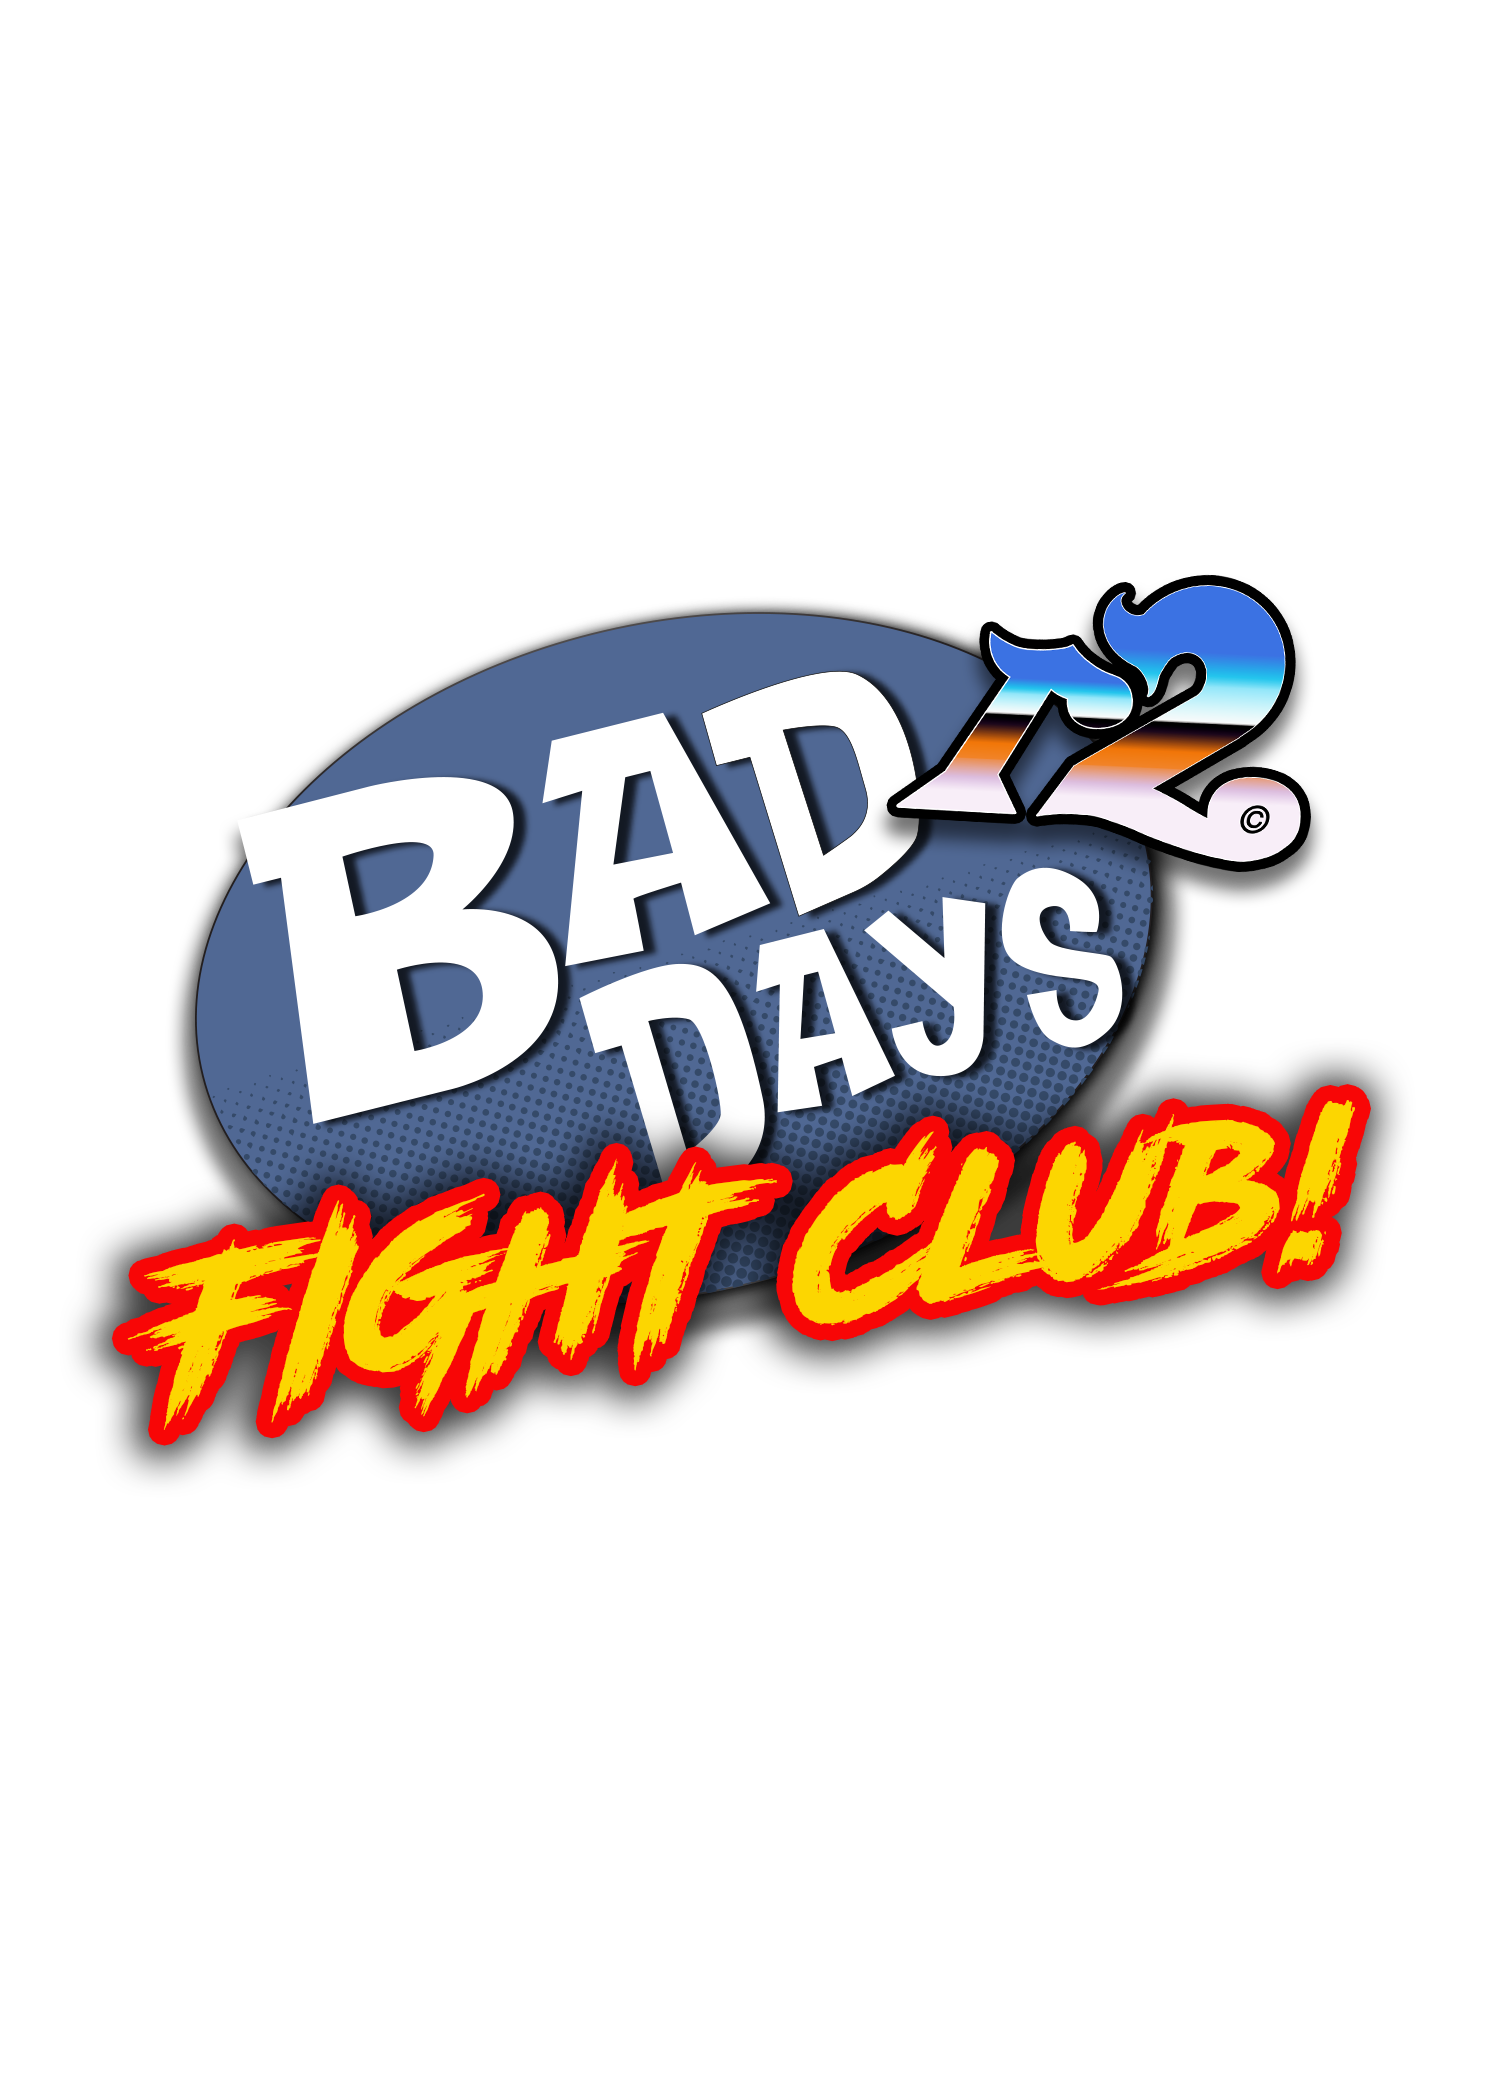 Bad Days Fight Club